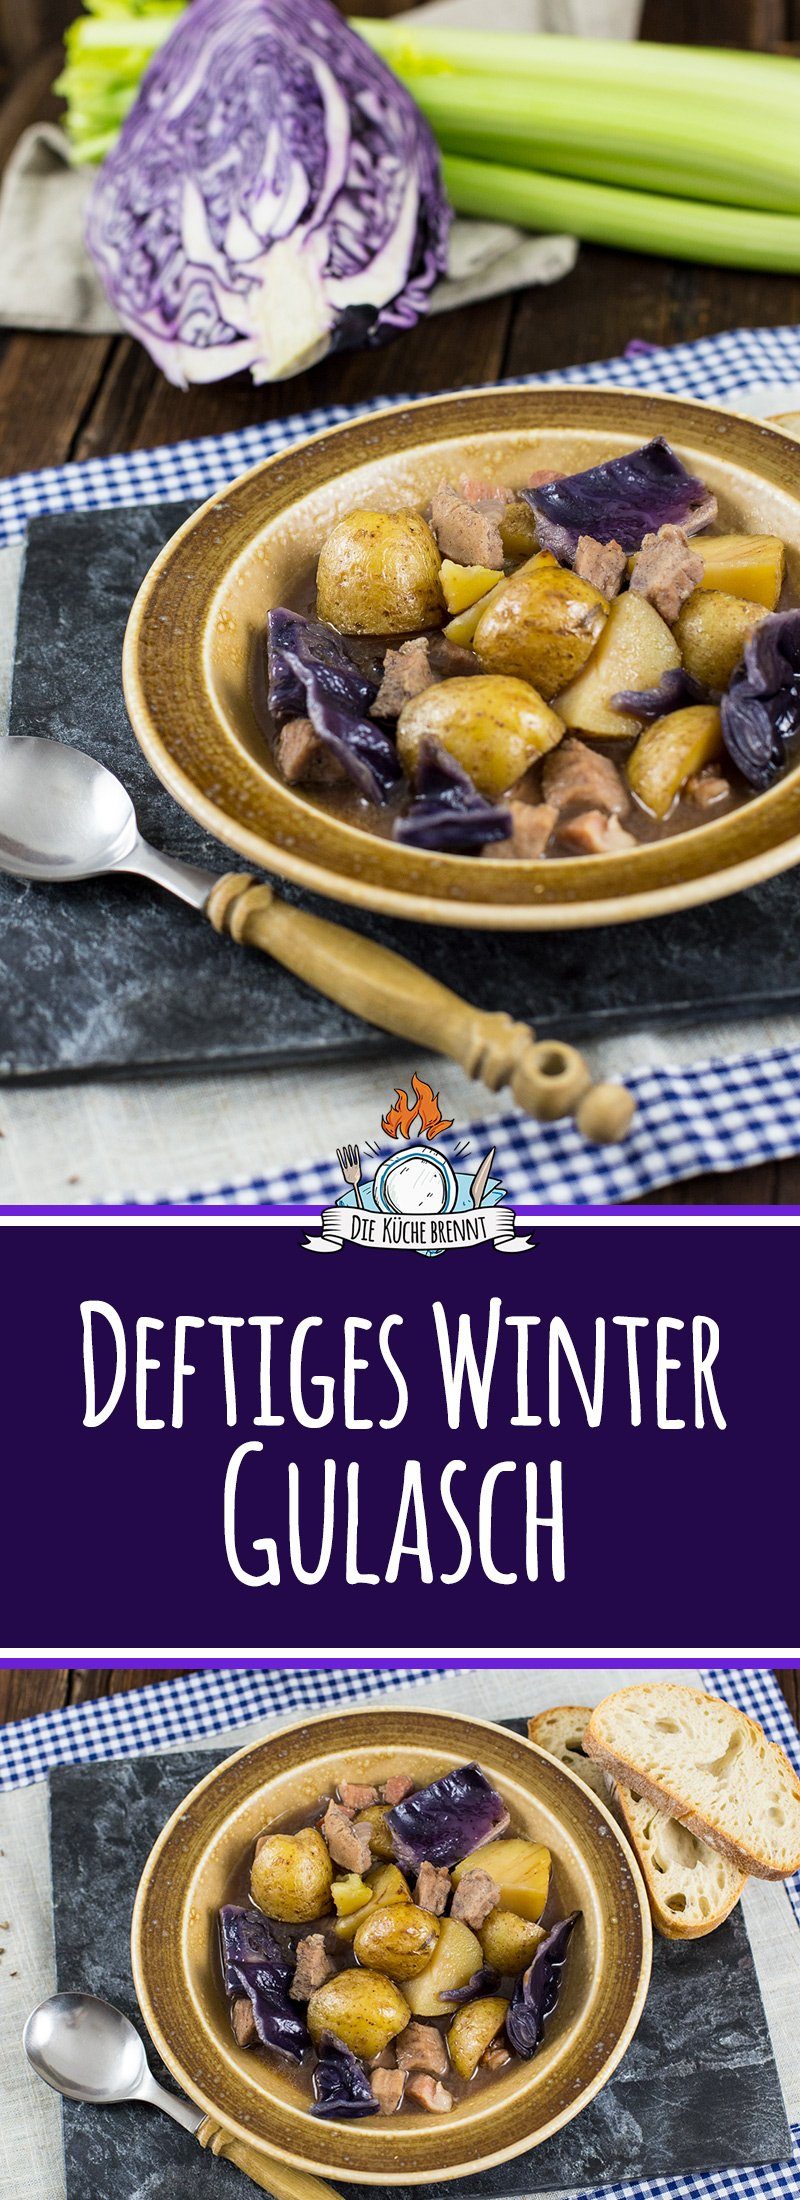 Deftiges Winter Gulasch Rezept mit Kartoffeln, Rotkohl & Sellerie